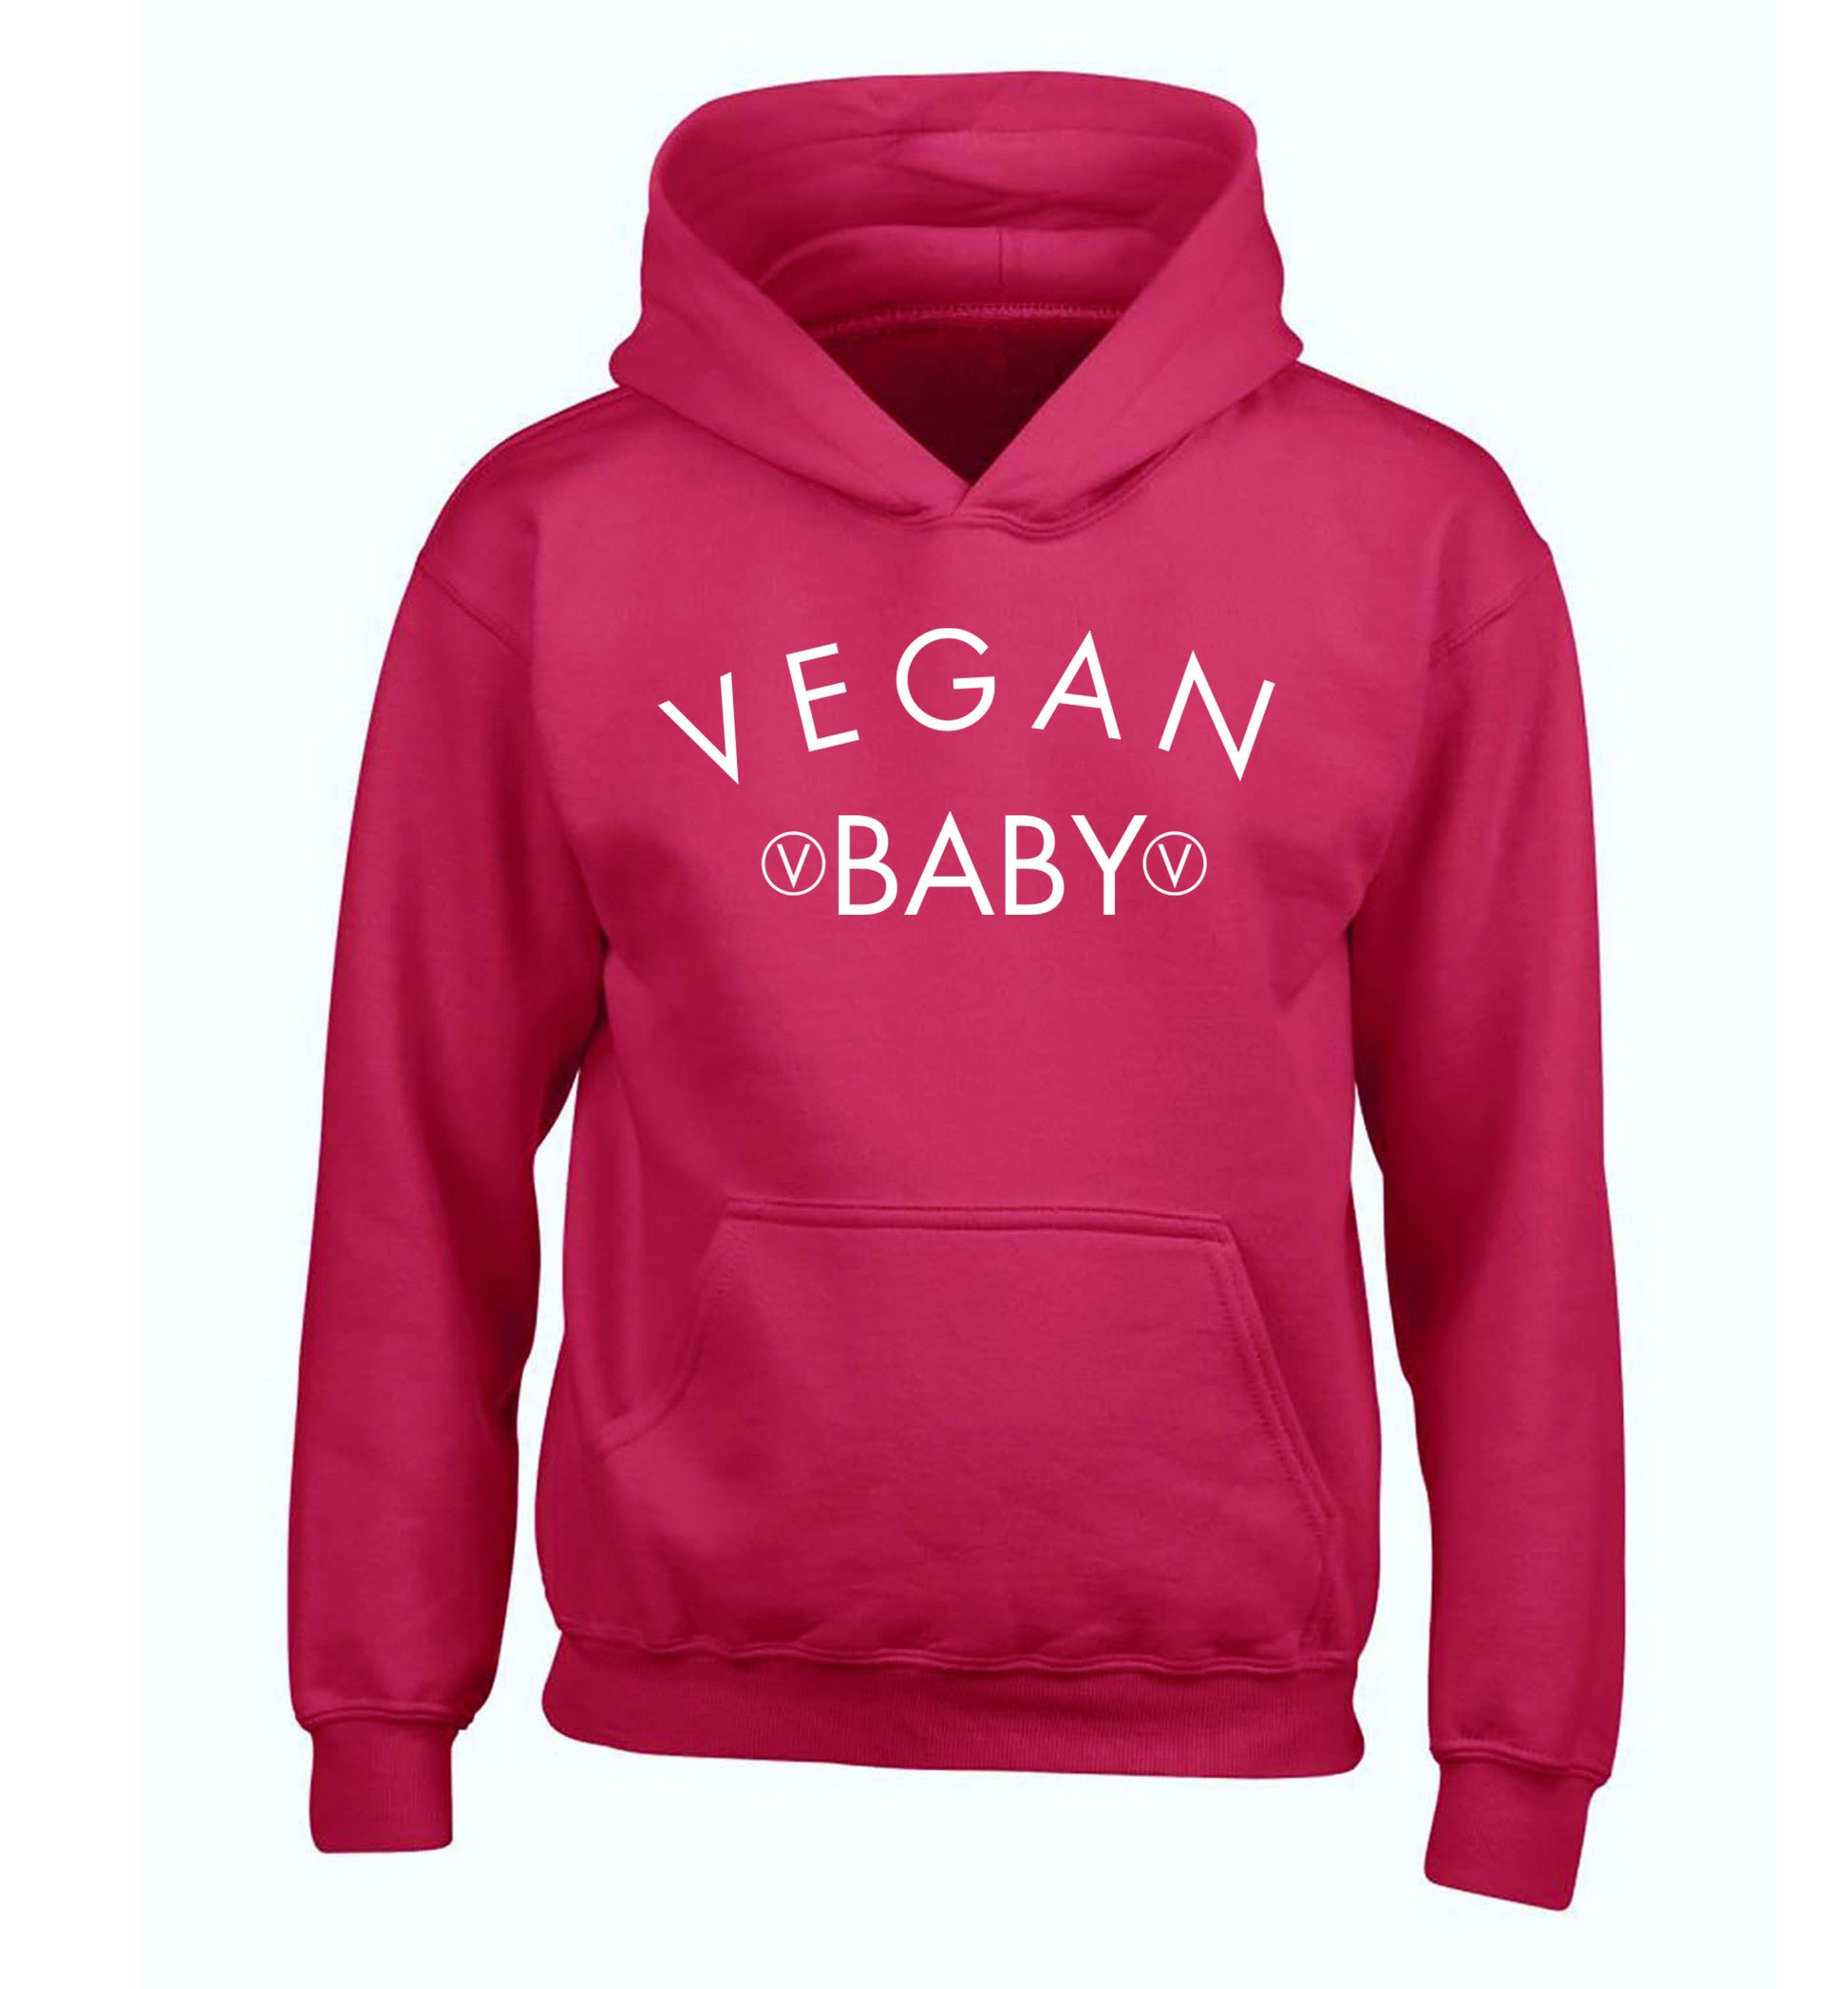 Vegan baby children's pink hoodie 12-14 Years